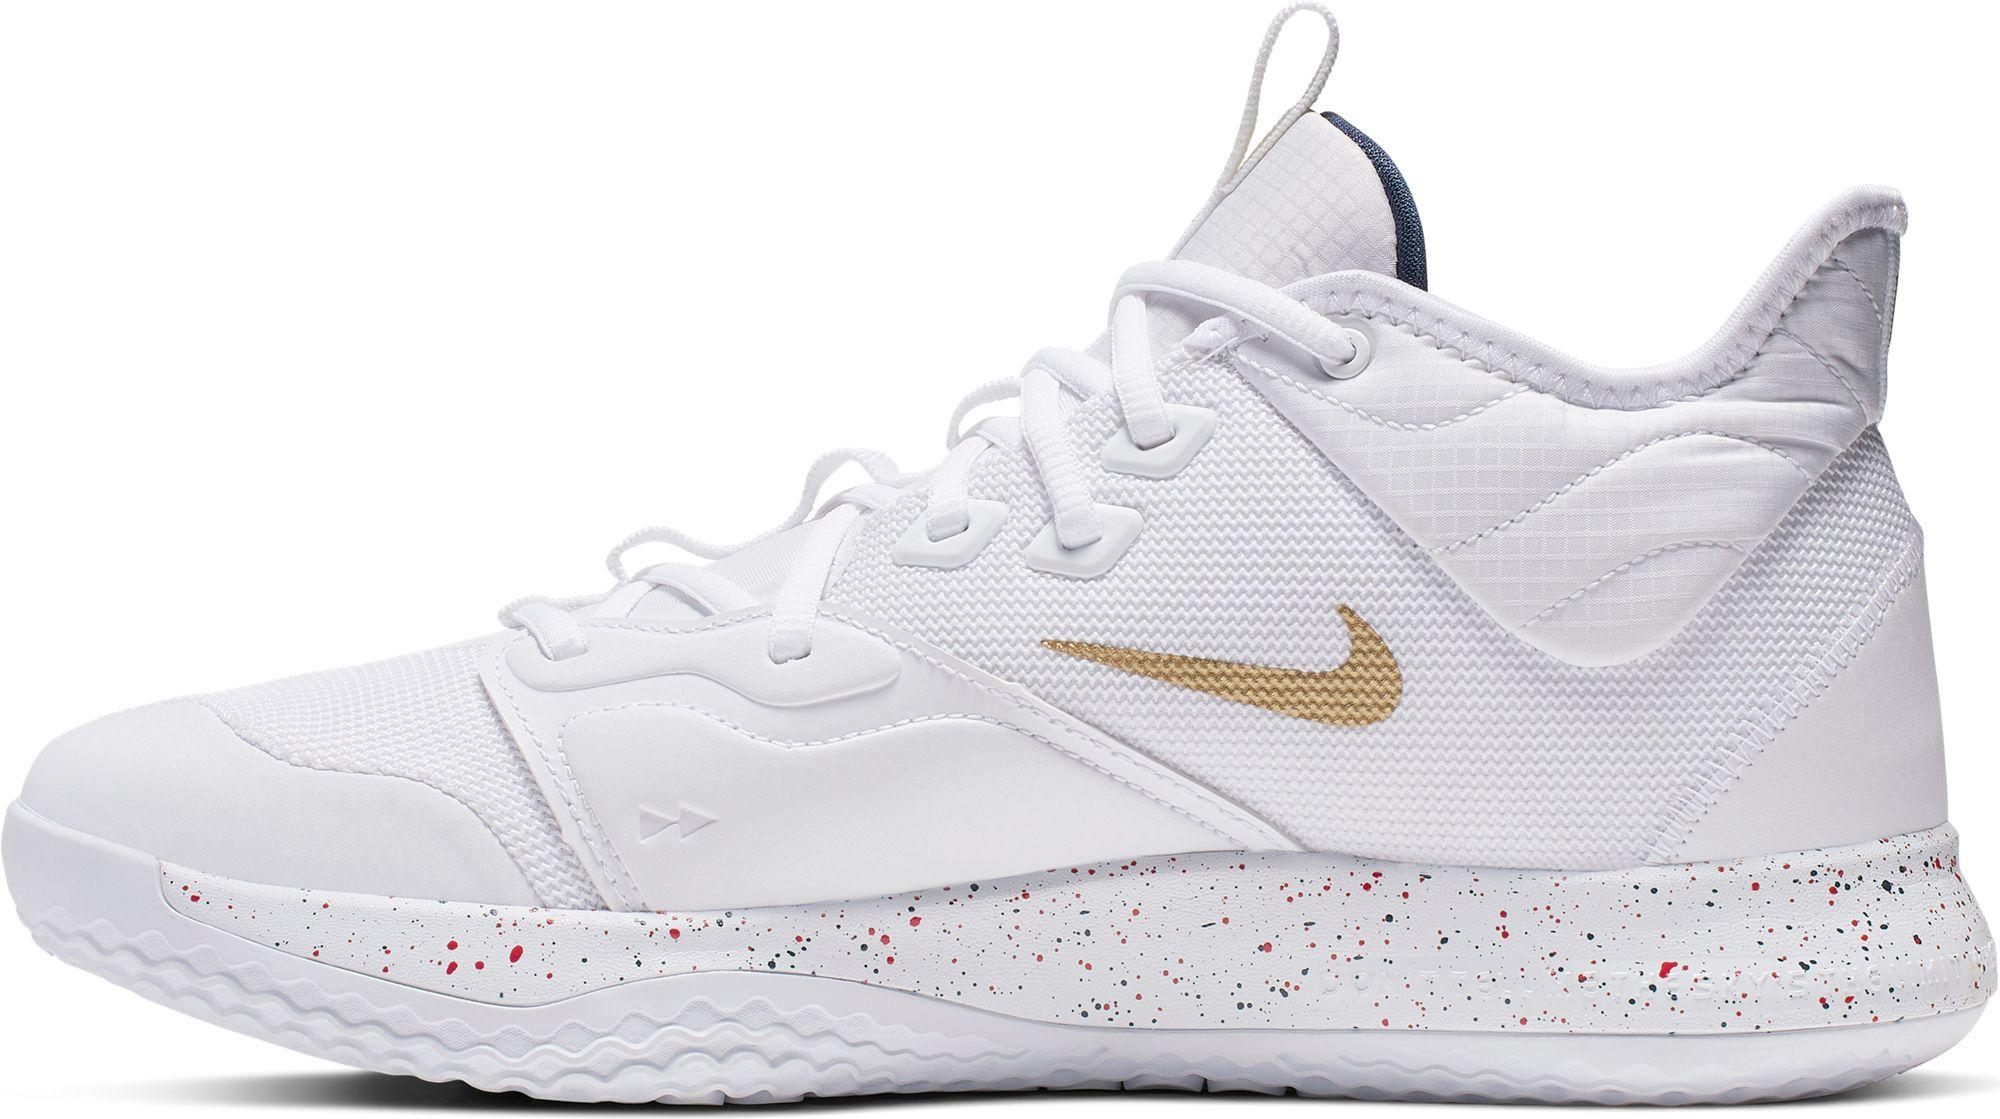 Nike Pg 3 Basketball Shoe in White/Gold (White) for Men - Lyst